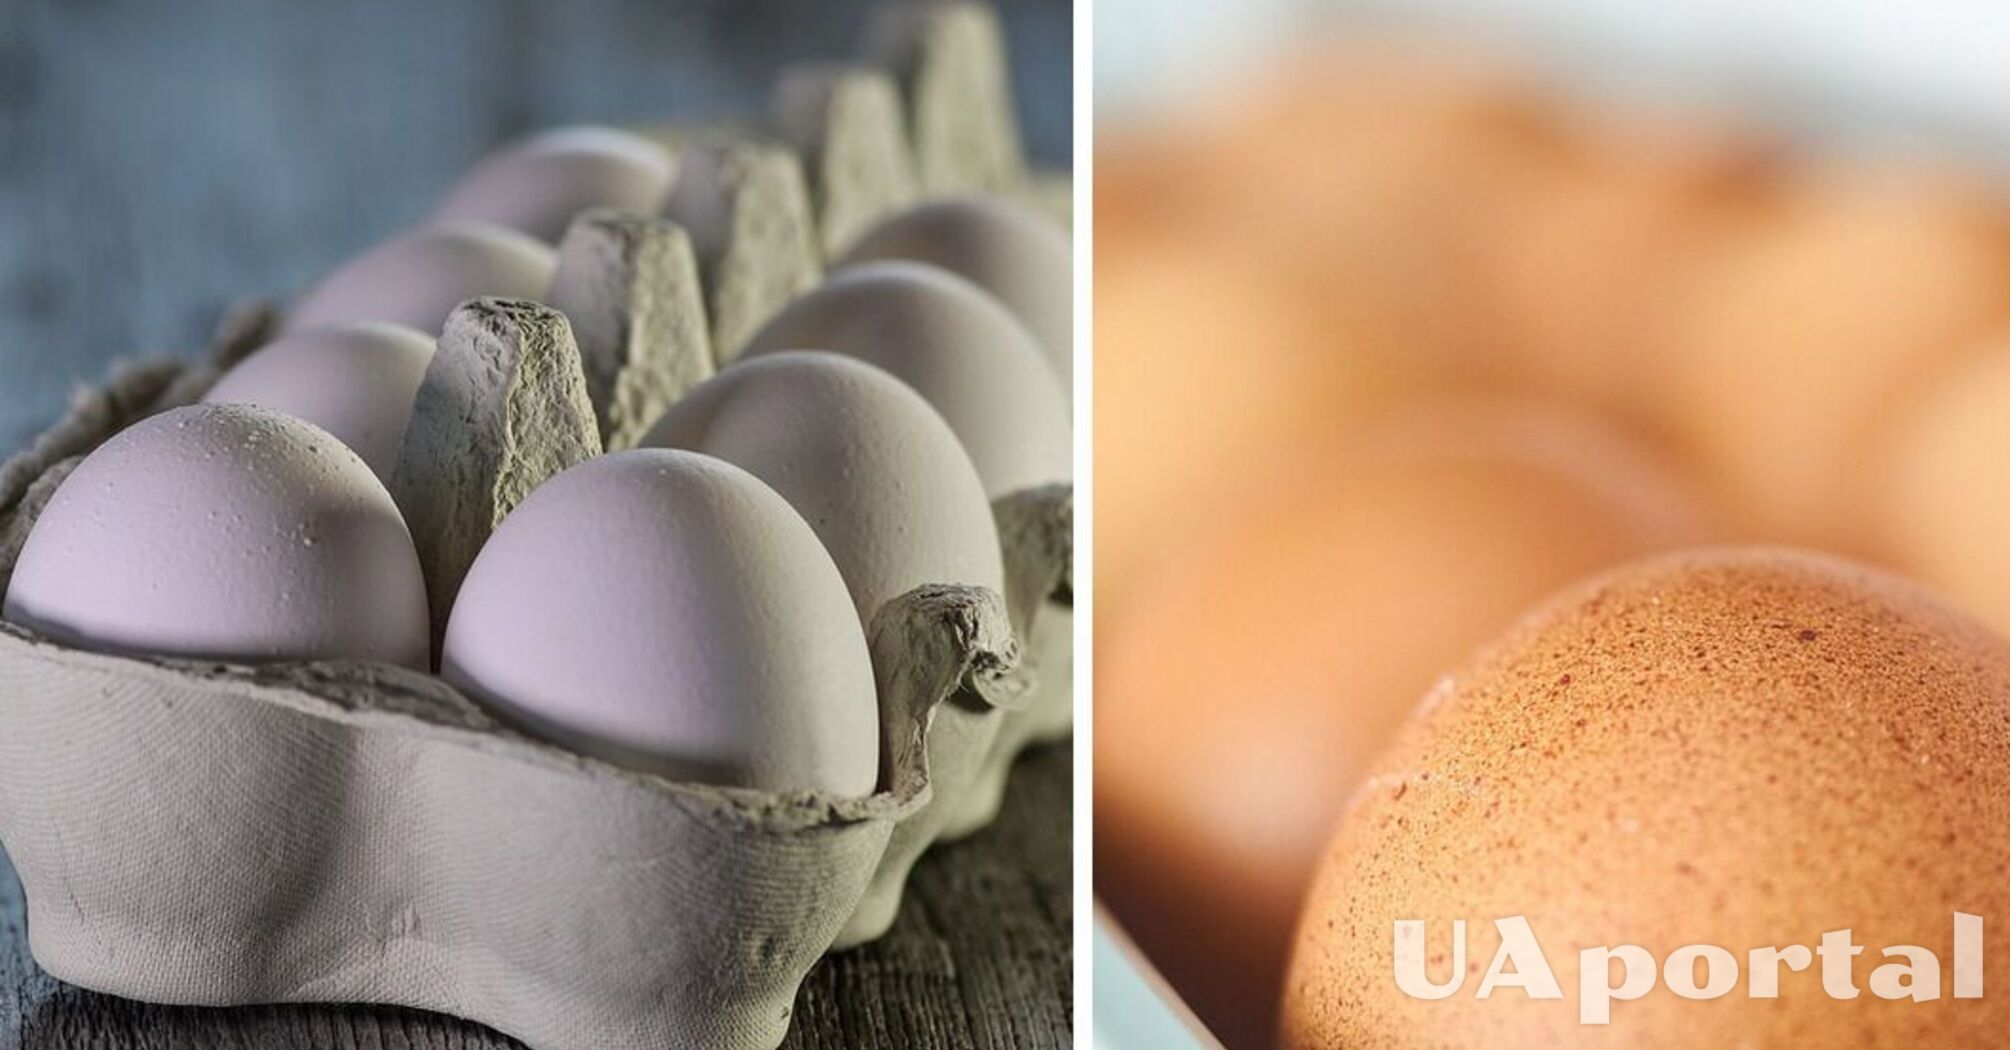 Експерти пояснили, як правильно тримати яйця у холодильнику, щоб вони довго не псувалися